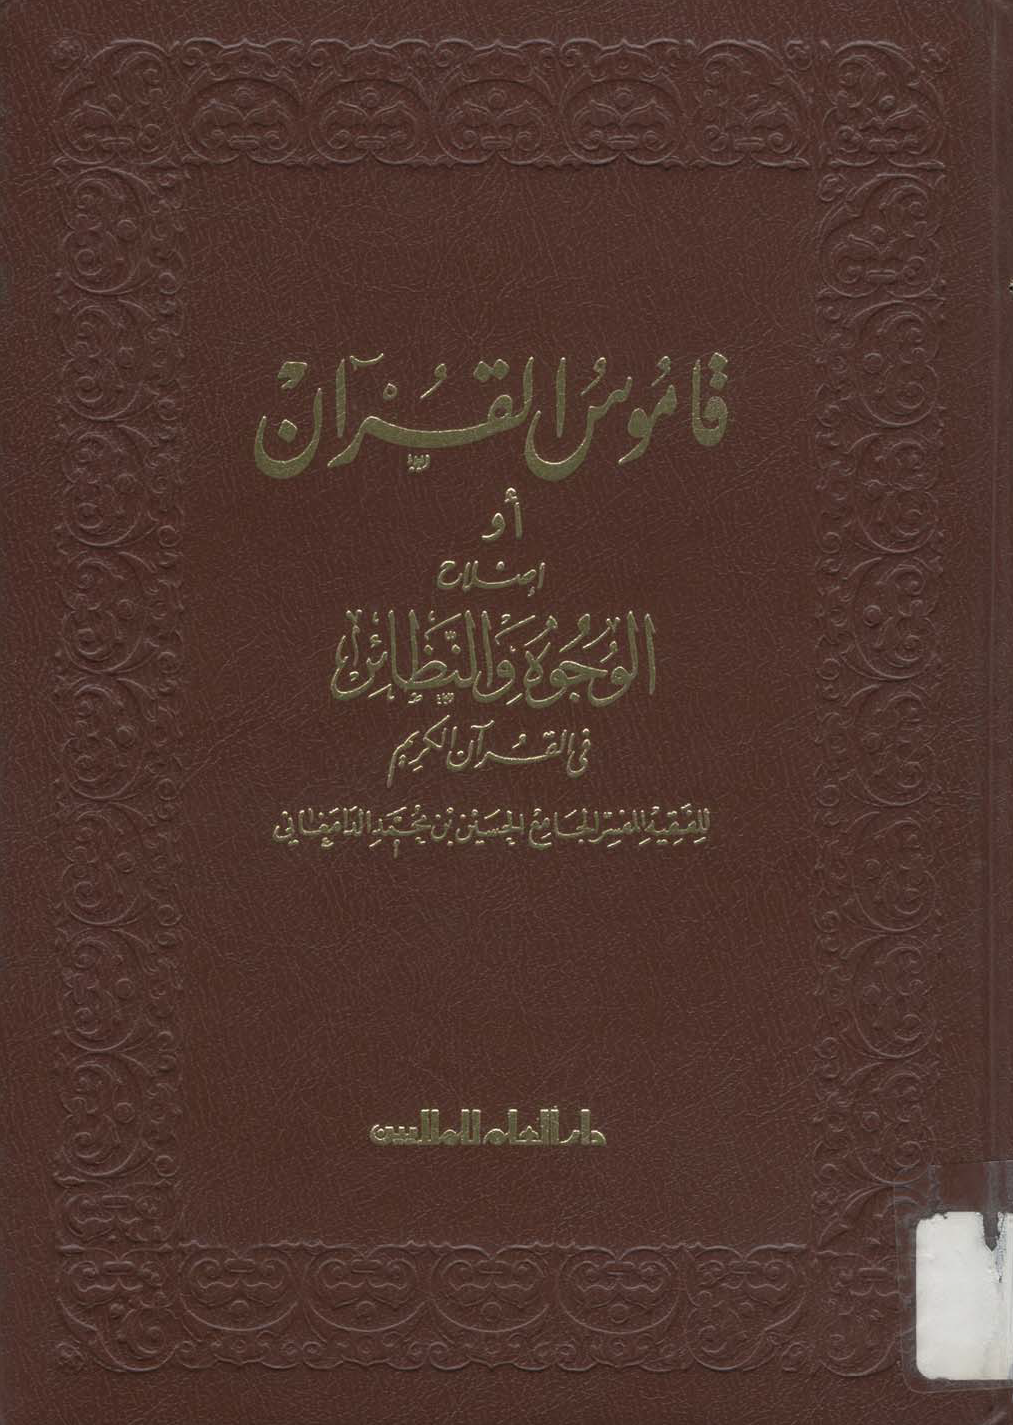 تحميل كتاب قاموس القرآن (إصلاح الوجوه والنظائر في القرآن الكريم) لـِ: الإمام أبو عبد الله الحسين بن محمد الدامغاني (ت 478)